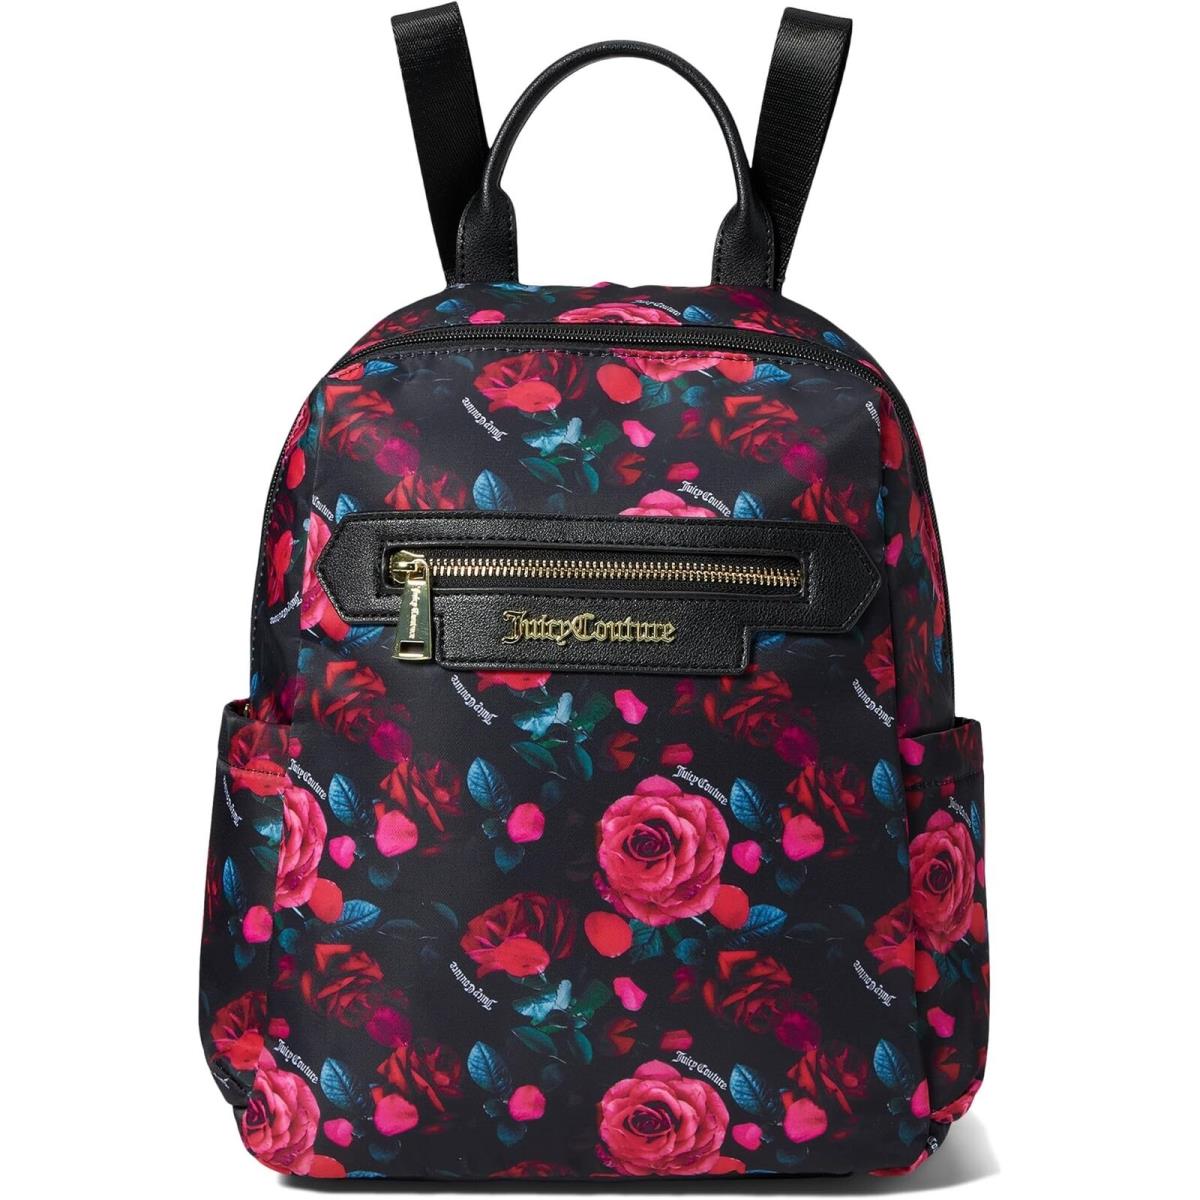 Juicy Couture Petal Rose Black Multi Backpack Women Backpacks